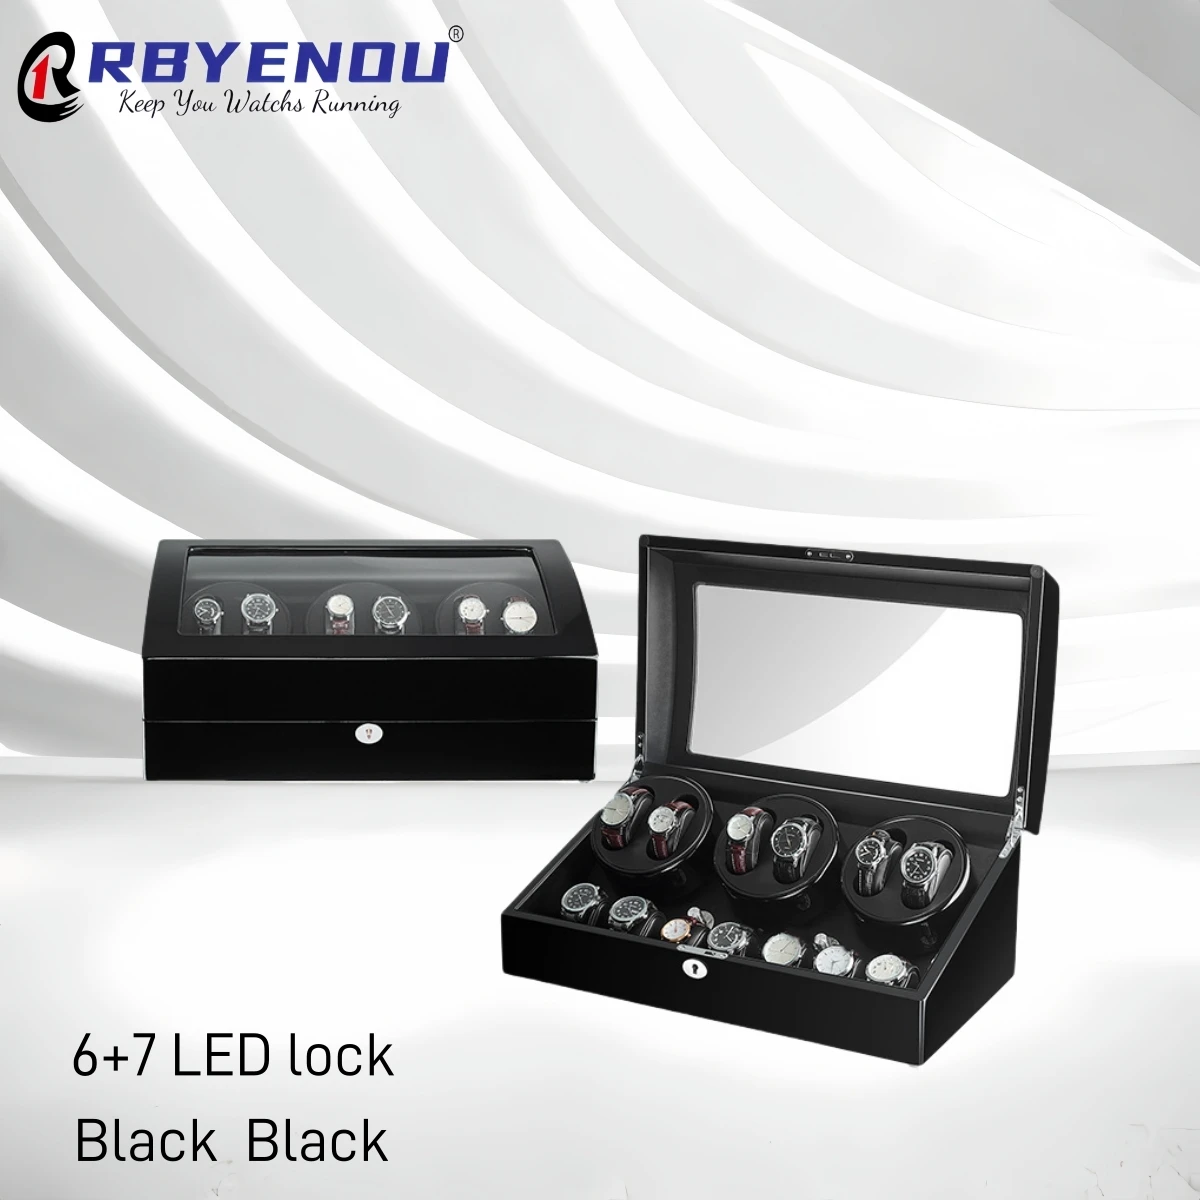 Pro rolex luxusní watchs displej skříňka otočný hodinky winders skříňka LED zamknout hodinky pouzdro 7+6 watchwinder personalizované přizpůsobené logem